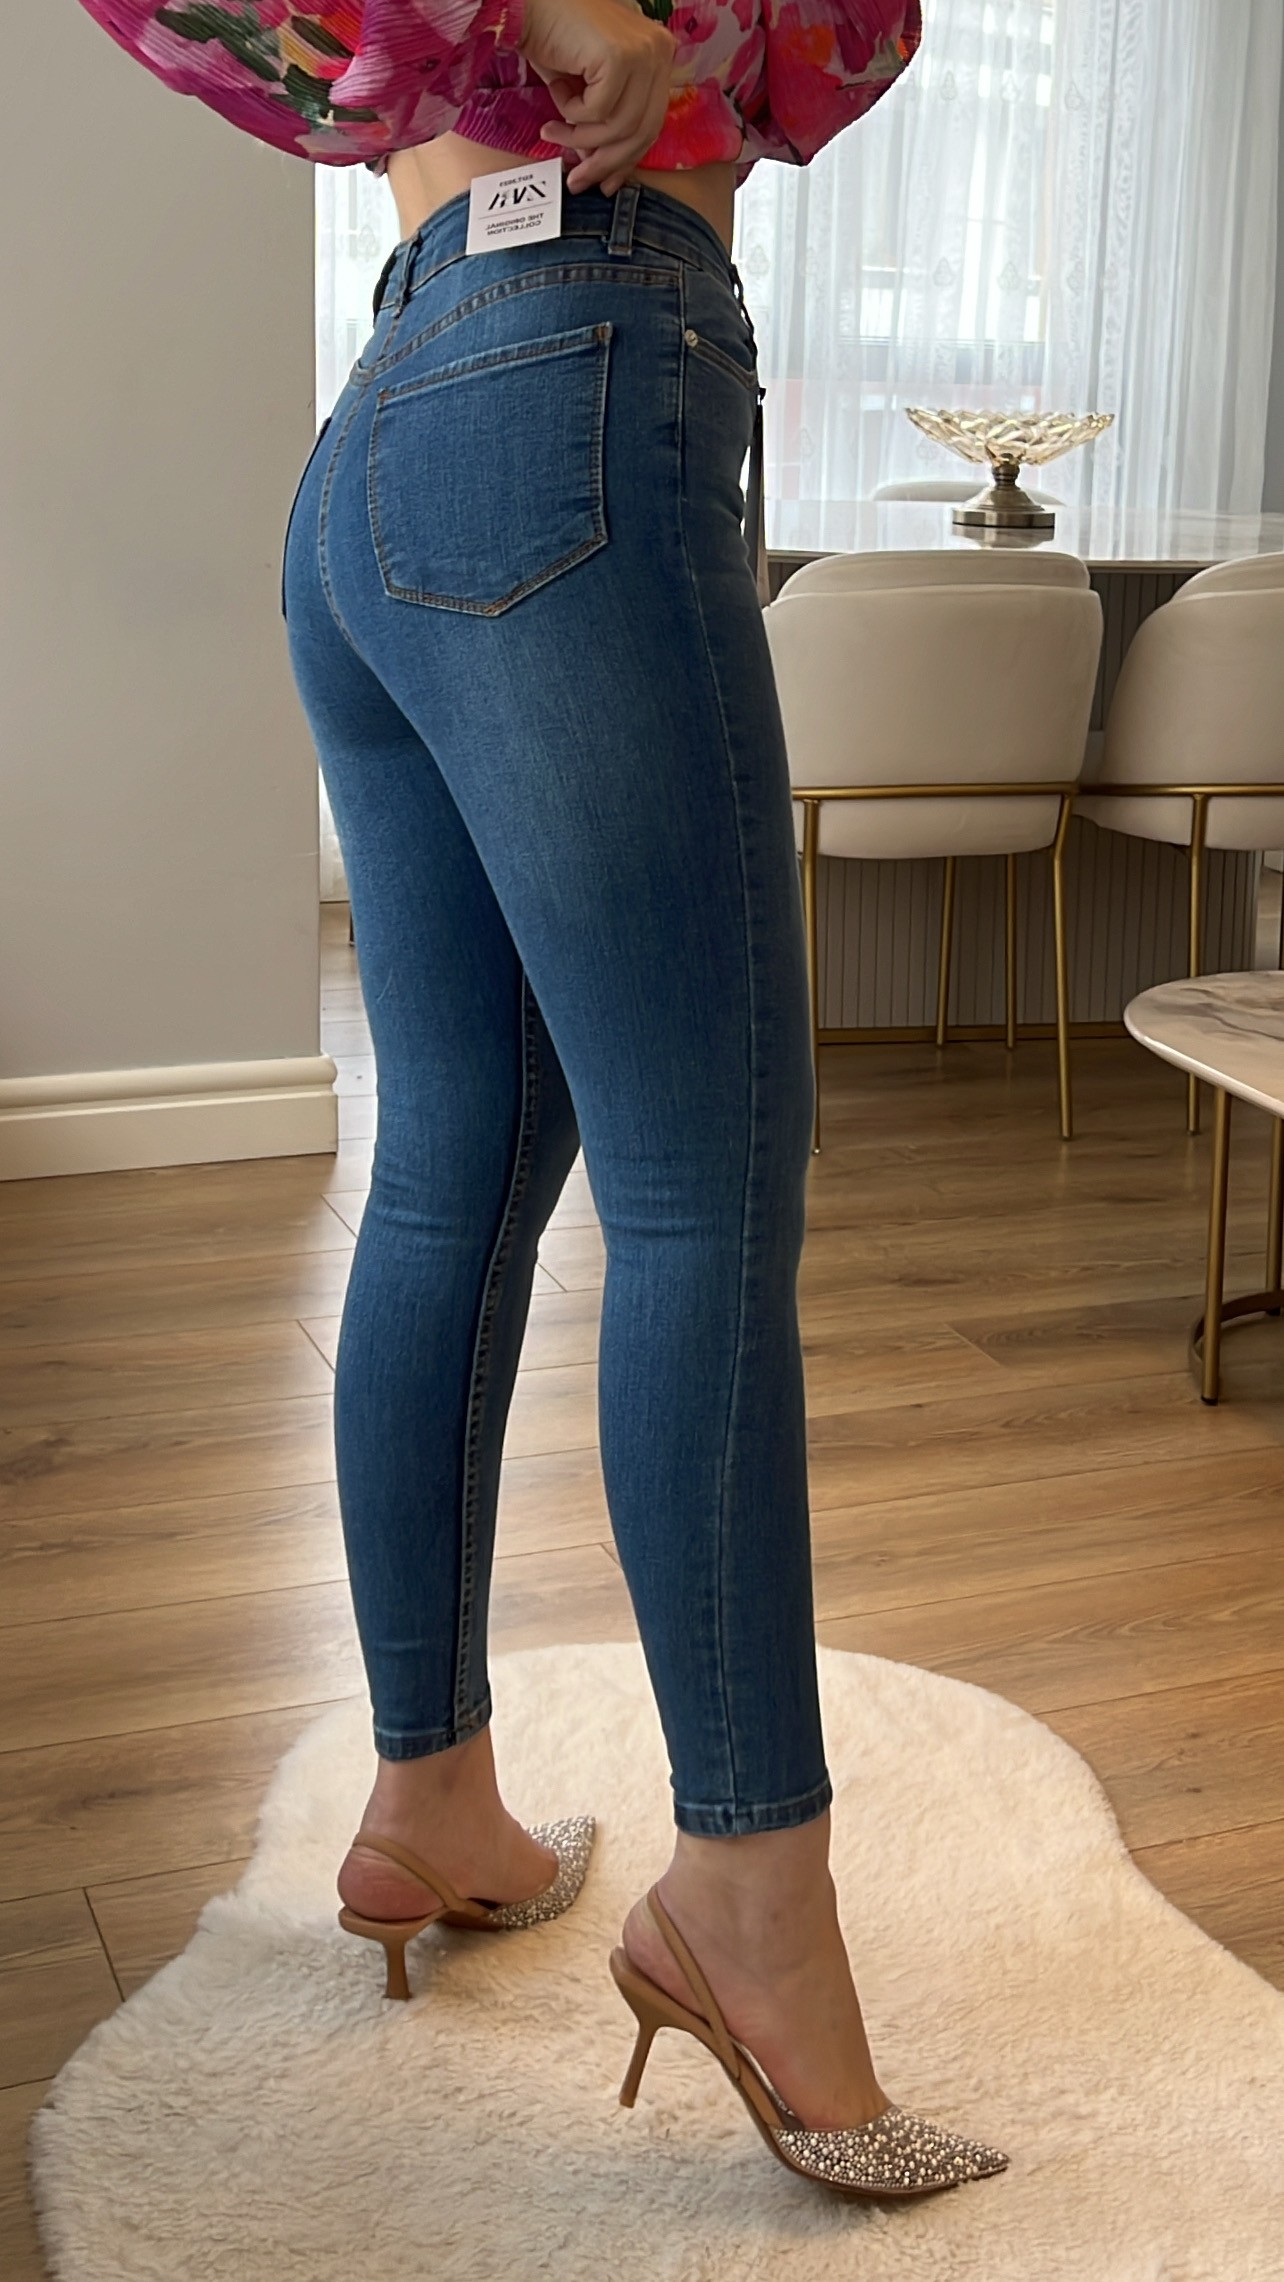 ZR Açık Kot Toparlayıcı Skinny Jeans